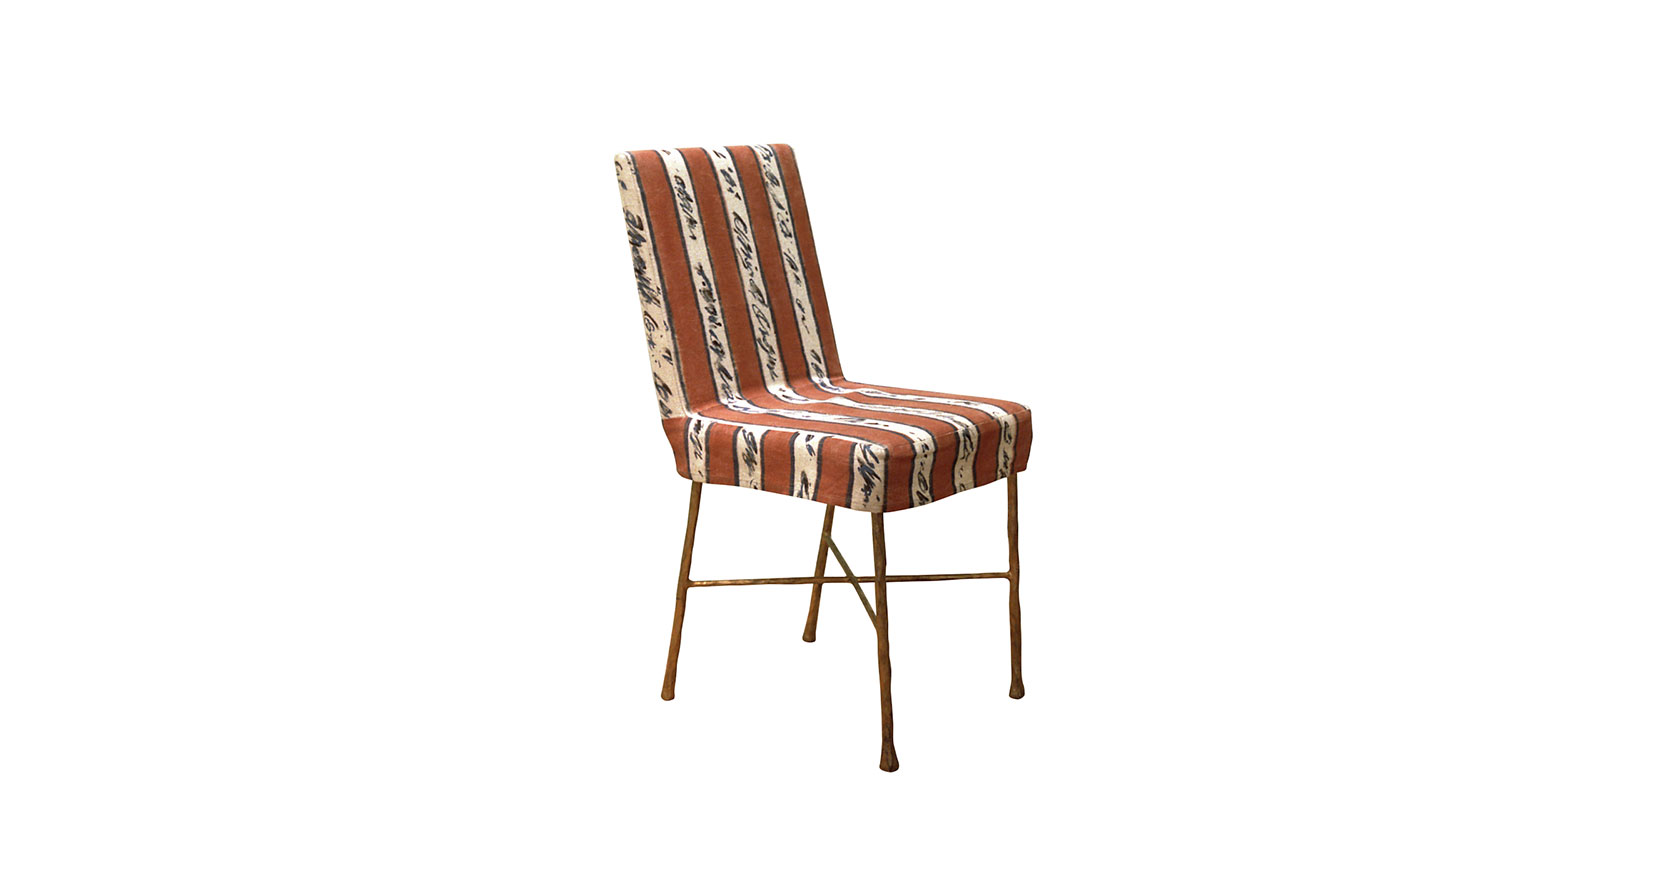 Garouste Bonetti, chaise minimaliste pieds en fer forgé doré avec une croix qui relie les pieds, assise et dossier recouverts d'une housse orange et blanc, avec des écritures noires sur blanc